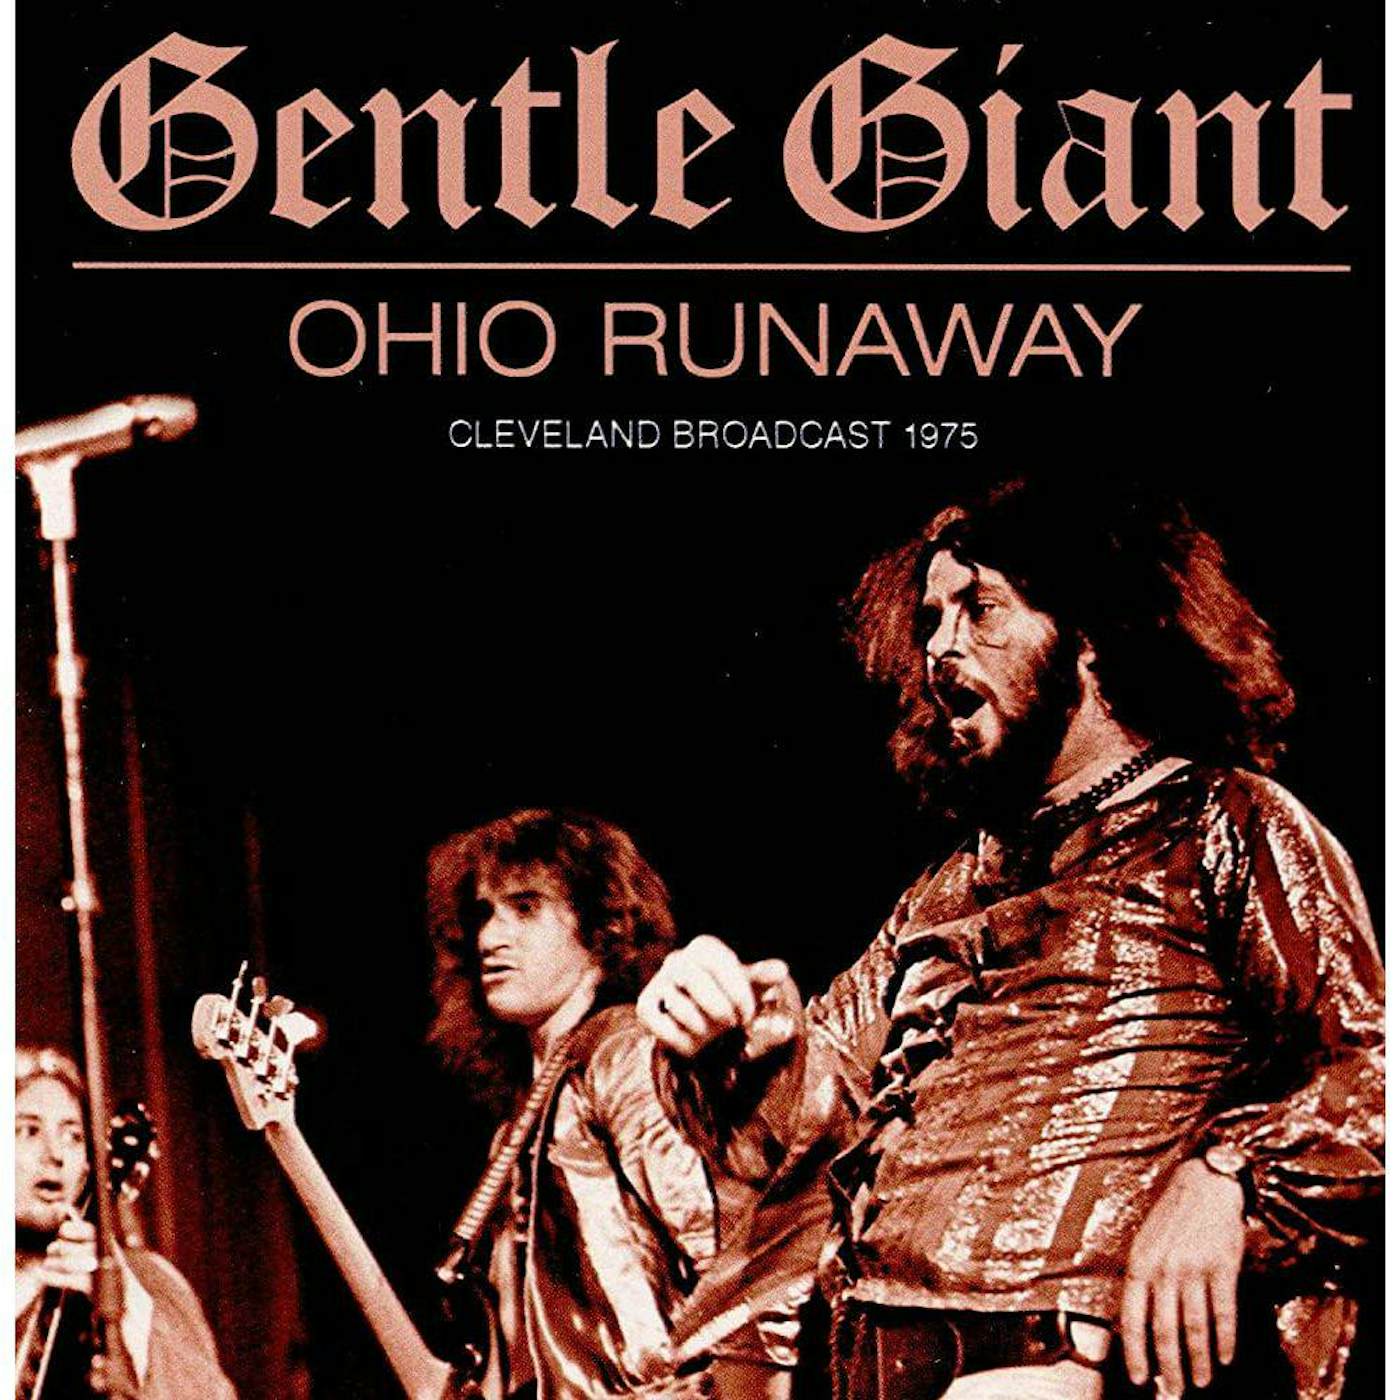 Gentle Giant Ohio Runaway Vinyl Record